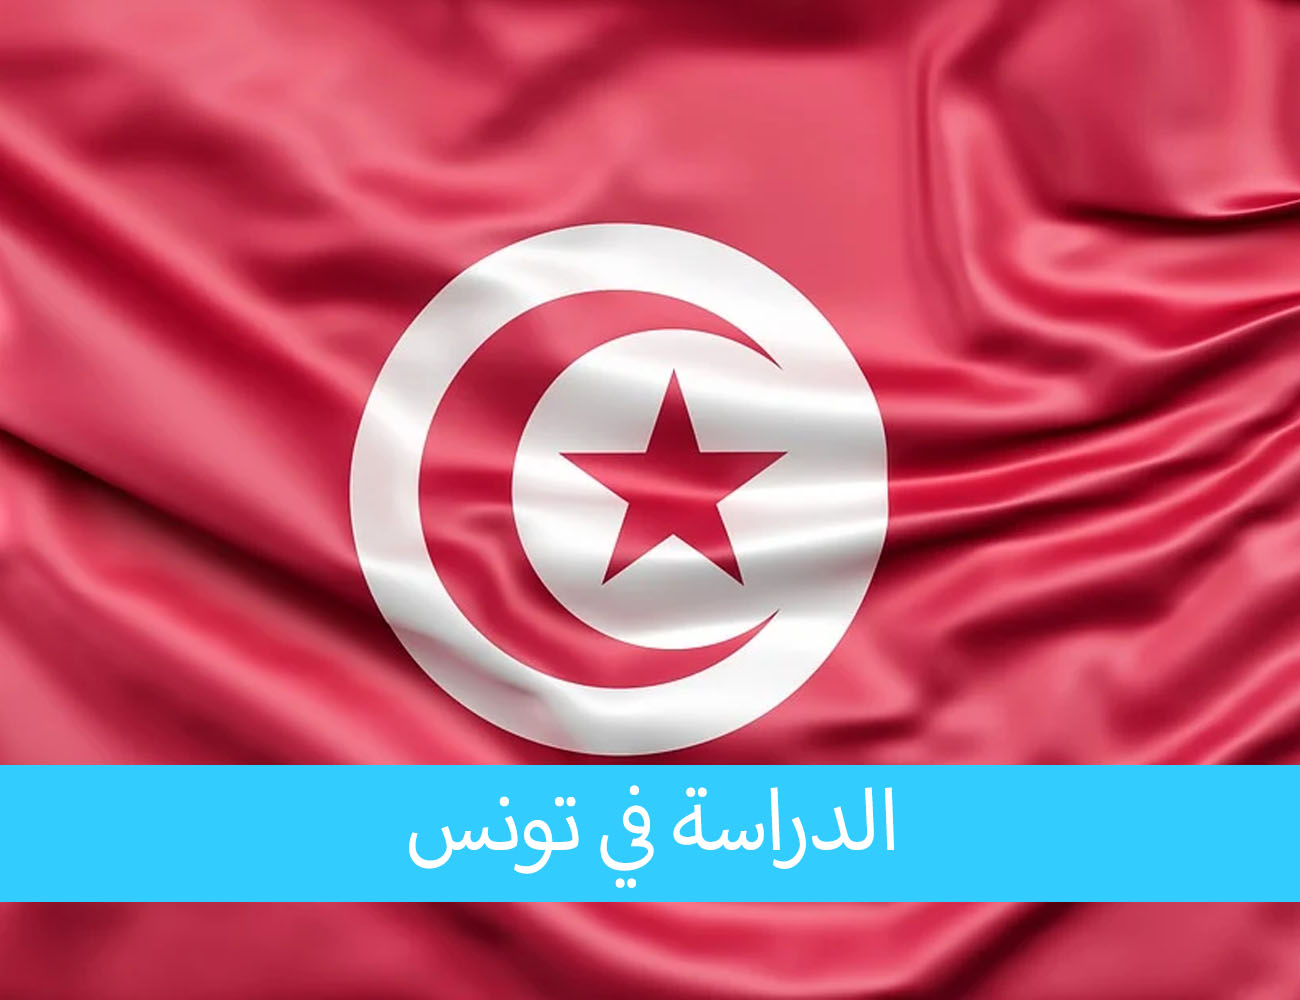 الدراسة في تونس للمغاربة الجمع بين السفر والدراسة الجادة في جامعات متميزة